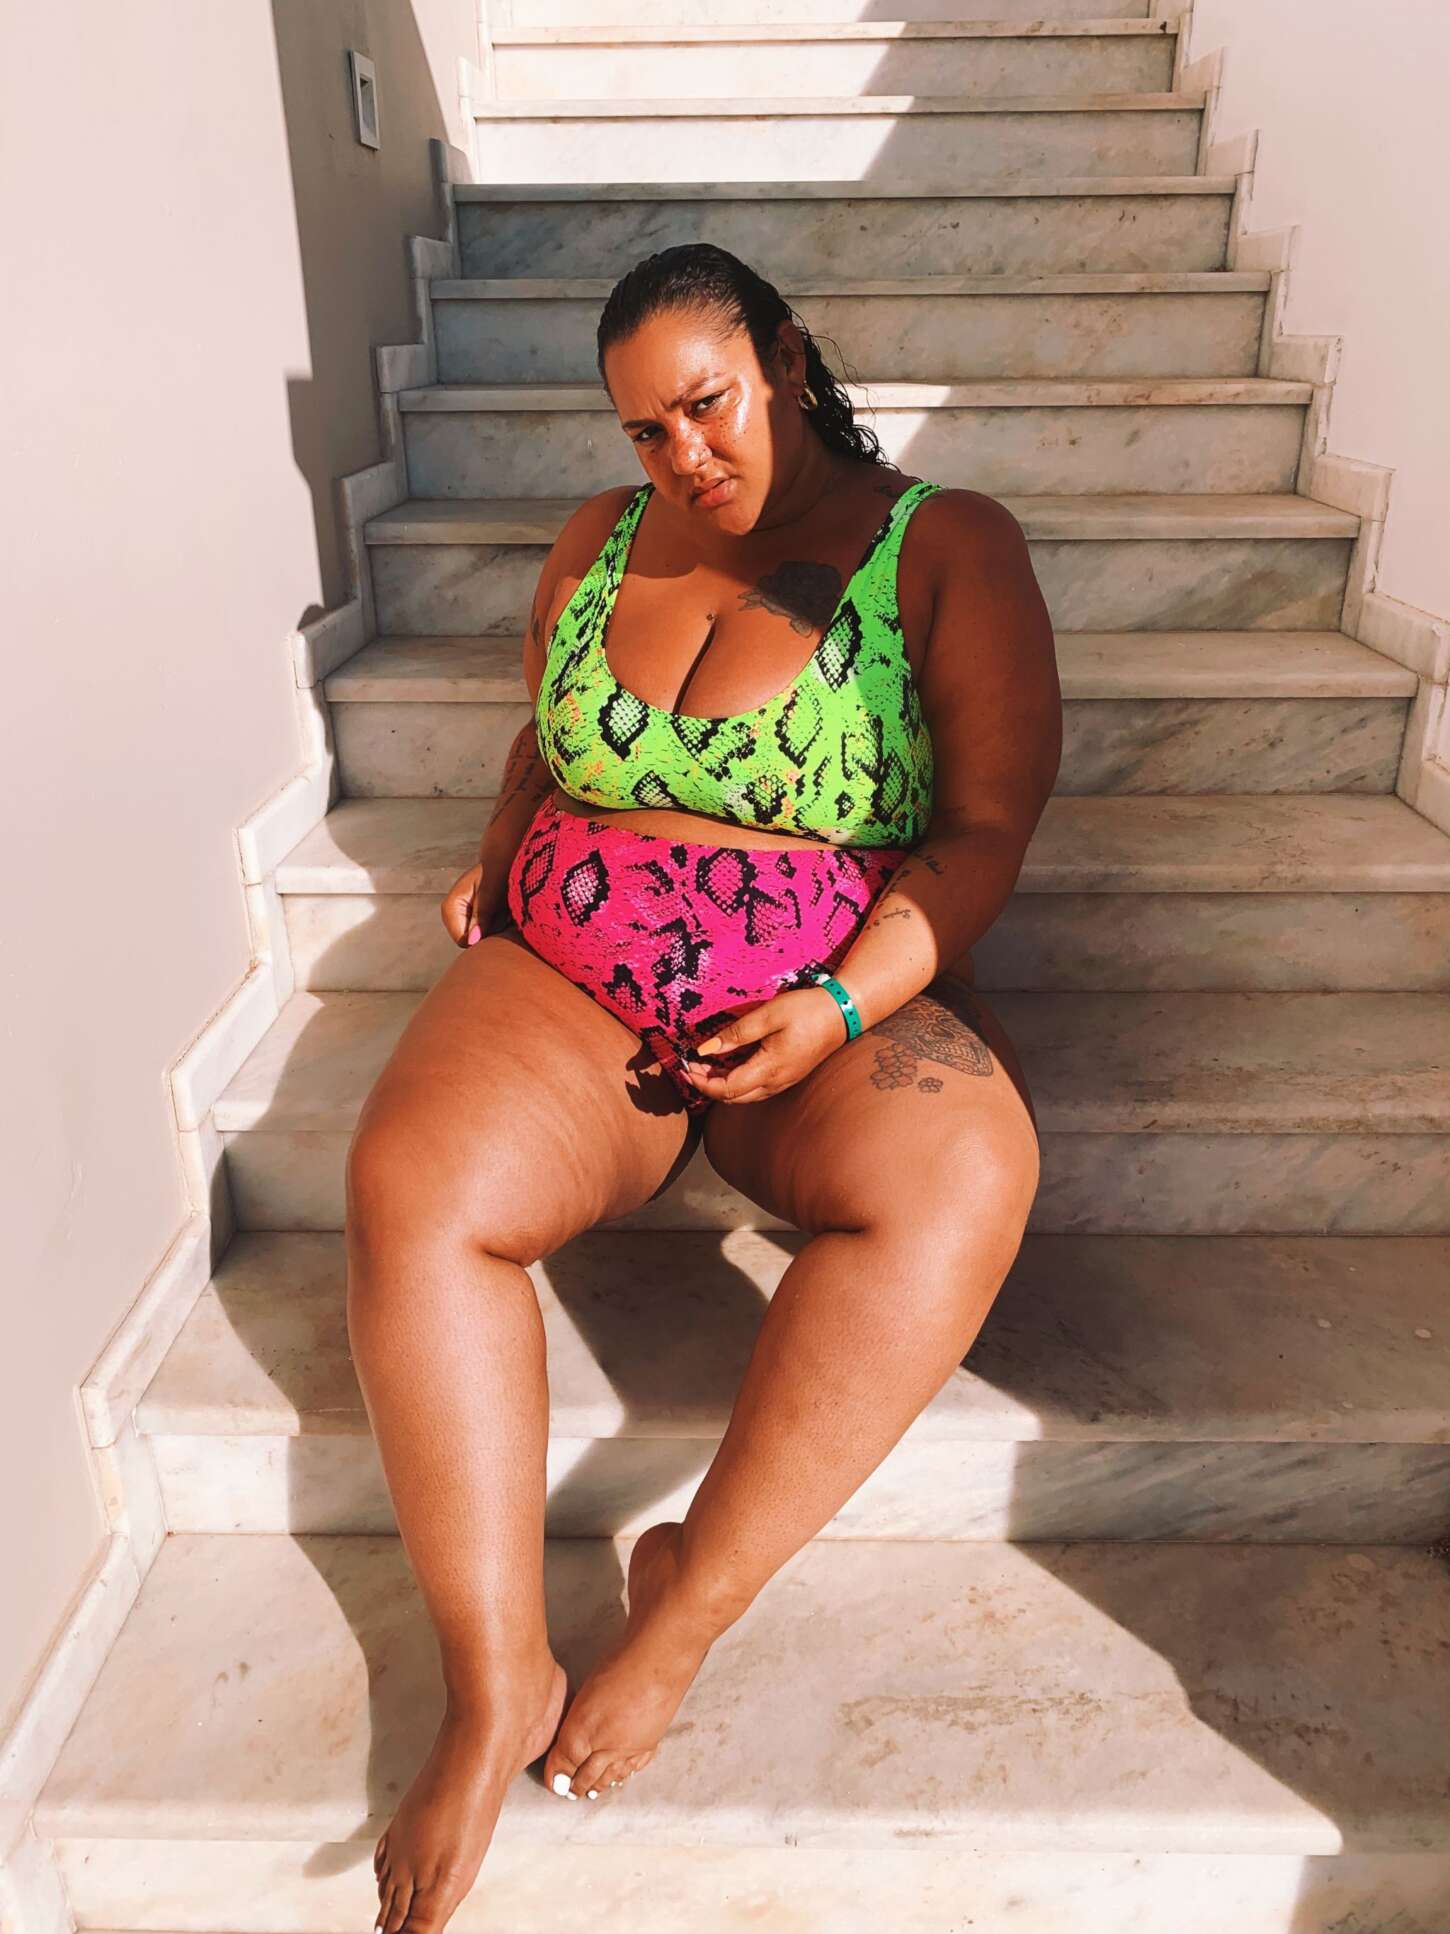 casey drewery share obese girl in bikini photos